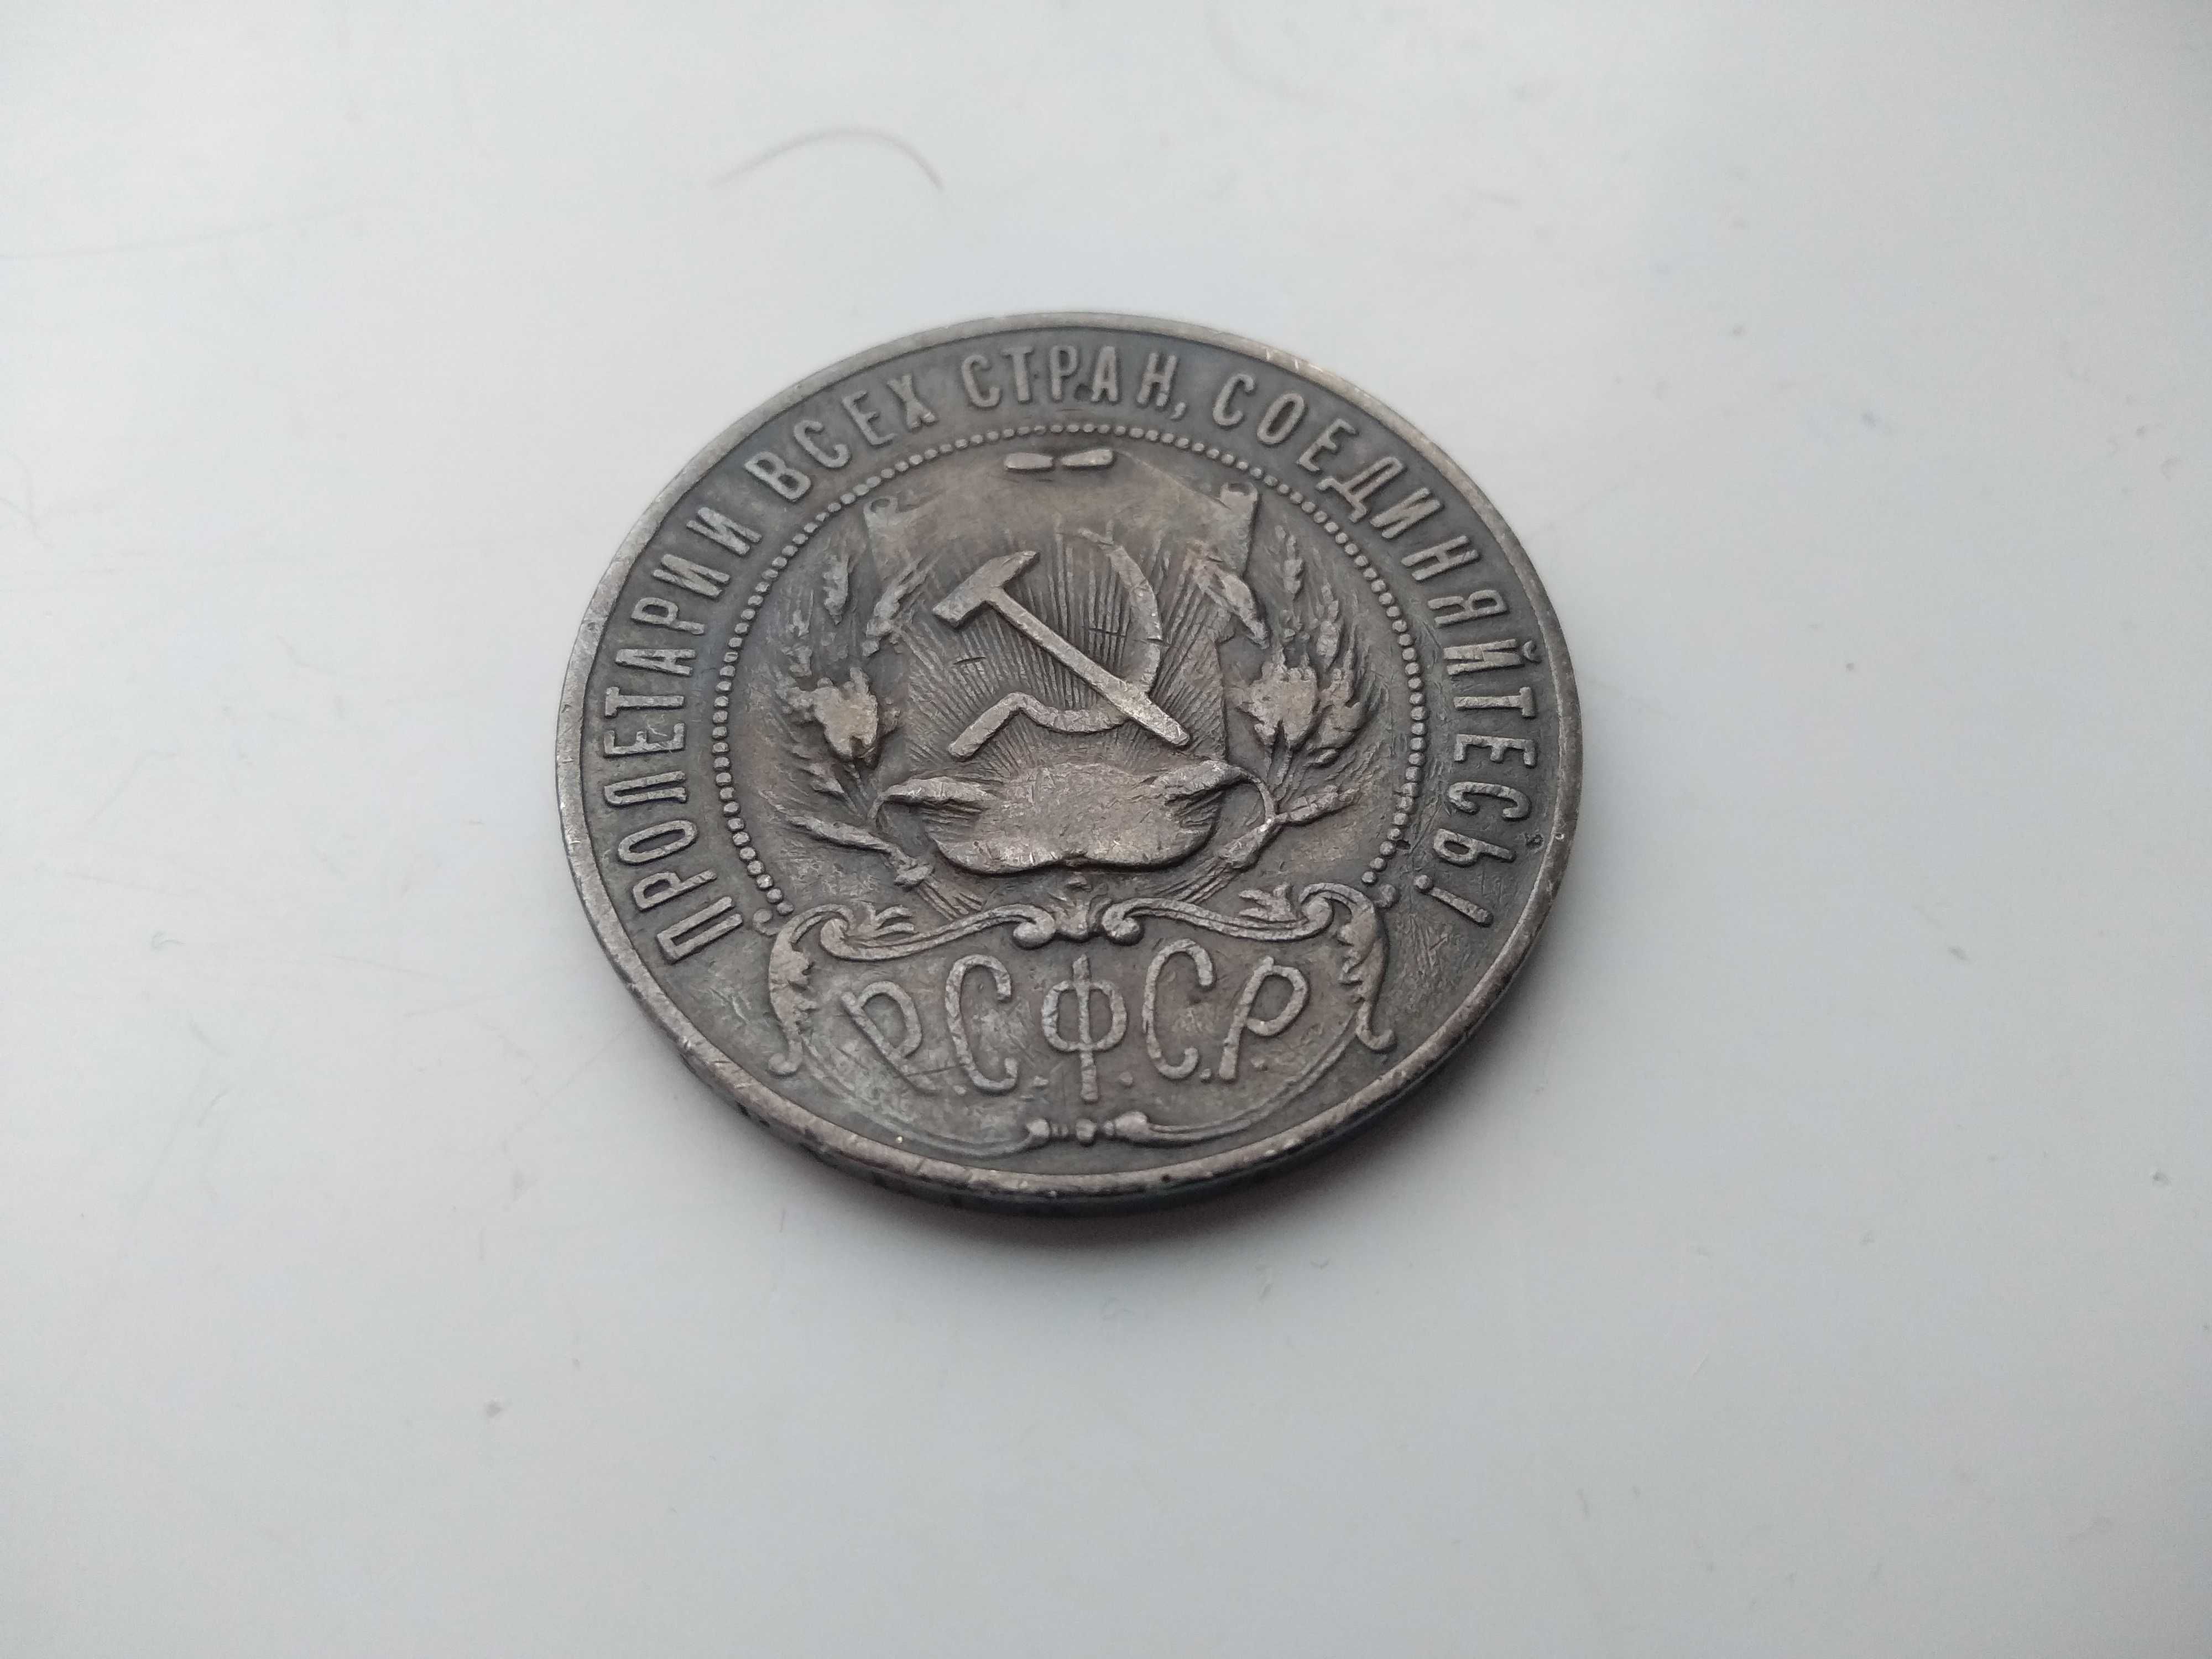 Монета Рубль 1921 Оригинал Срибло